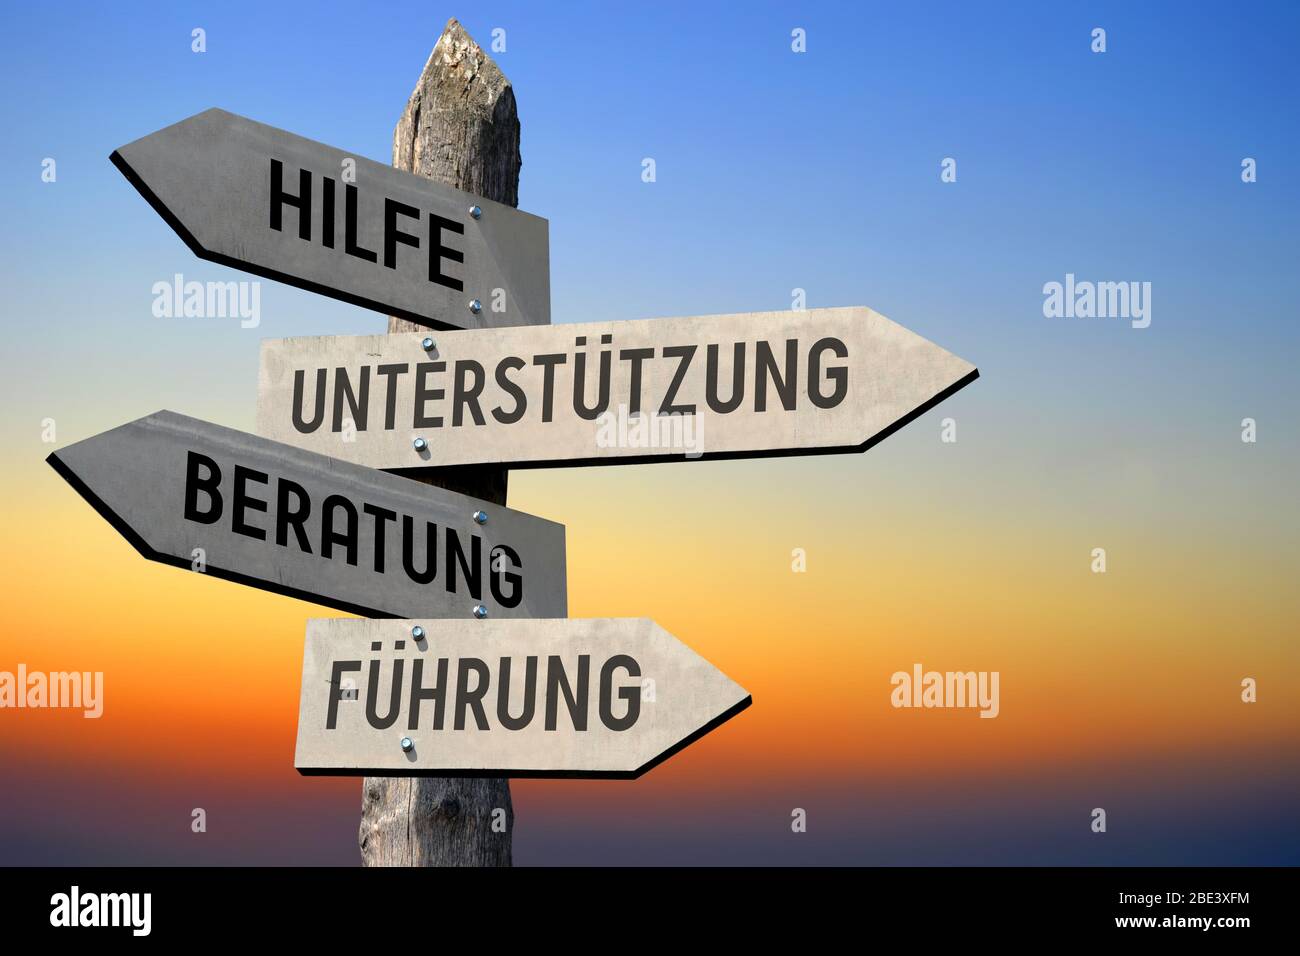 Hilfe, Unterstutzung, Beratung, Fuhrung - german signpost Stock Photo